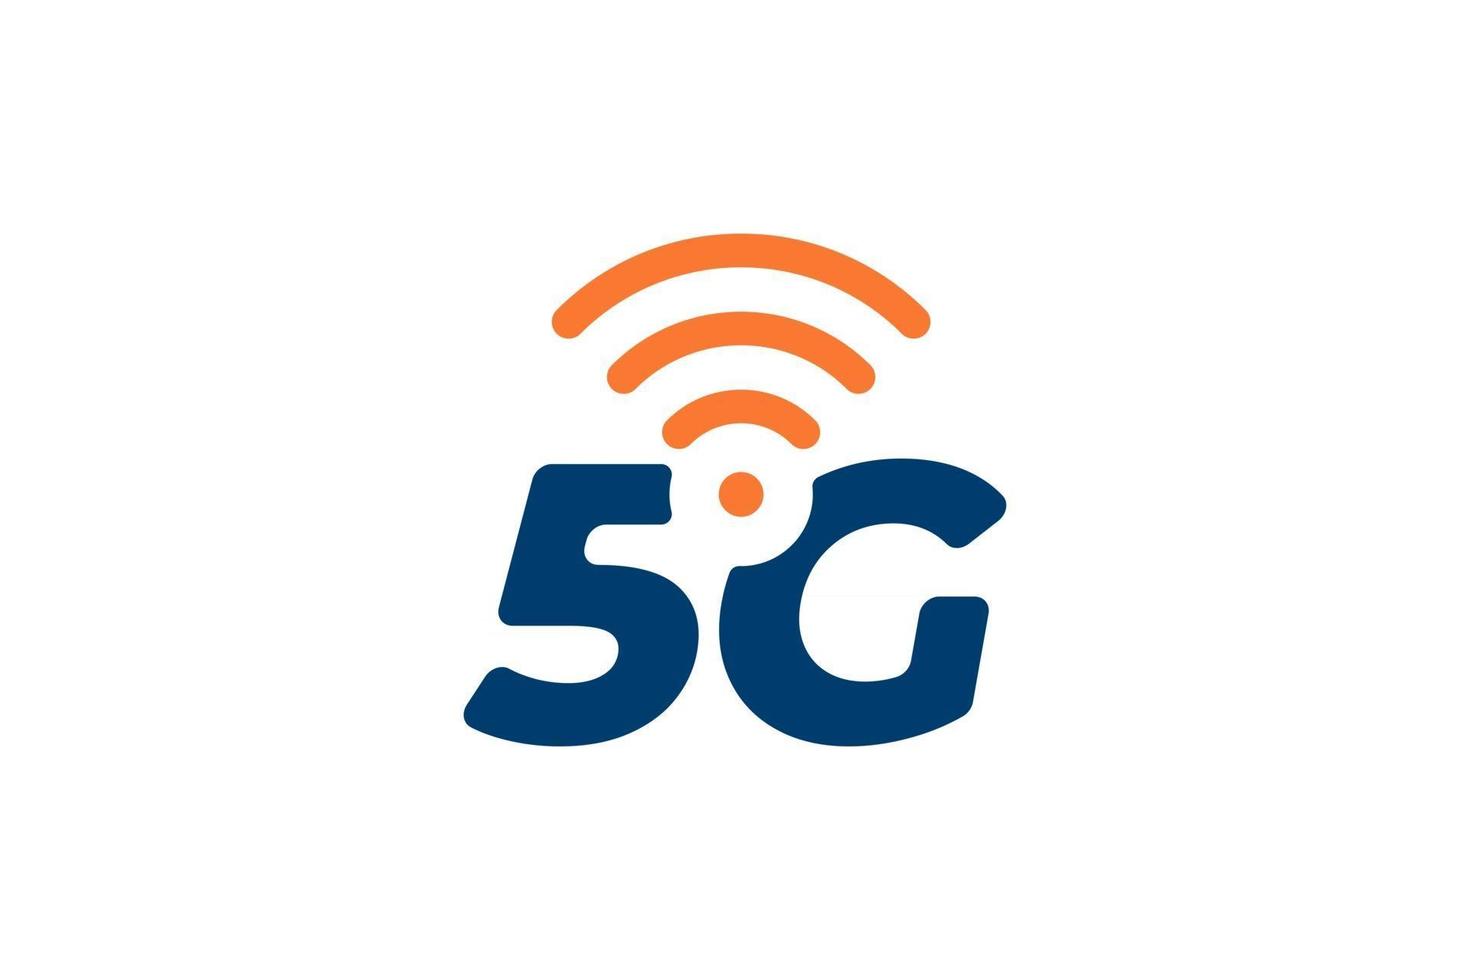 Símbolo de negocio de conexión de red 5g. Icono de tecnología de internet inalámbrica de quinta generación. Vector 5 g plantilla de diseño de emblema de comunicación aislado